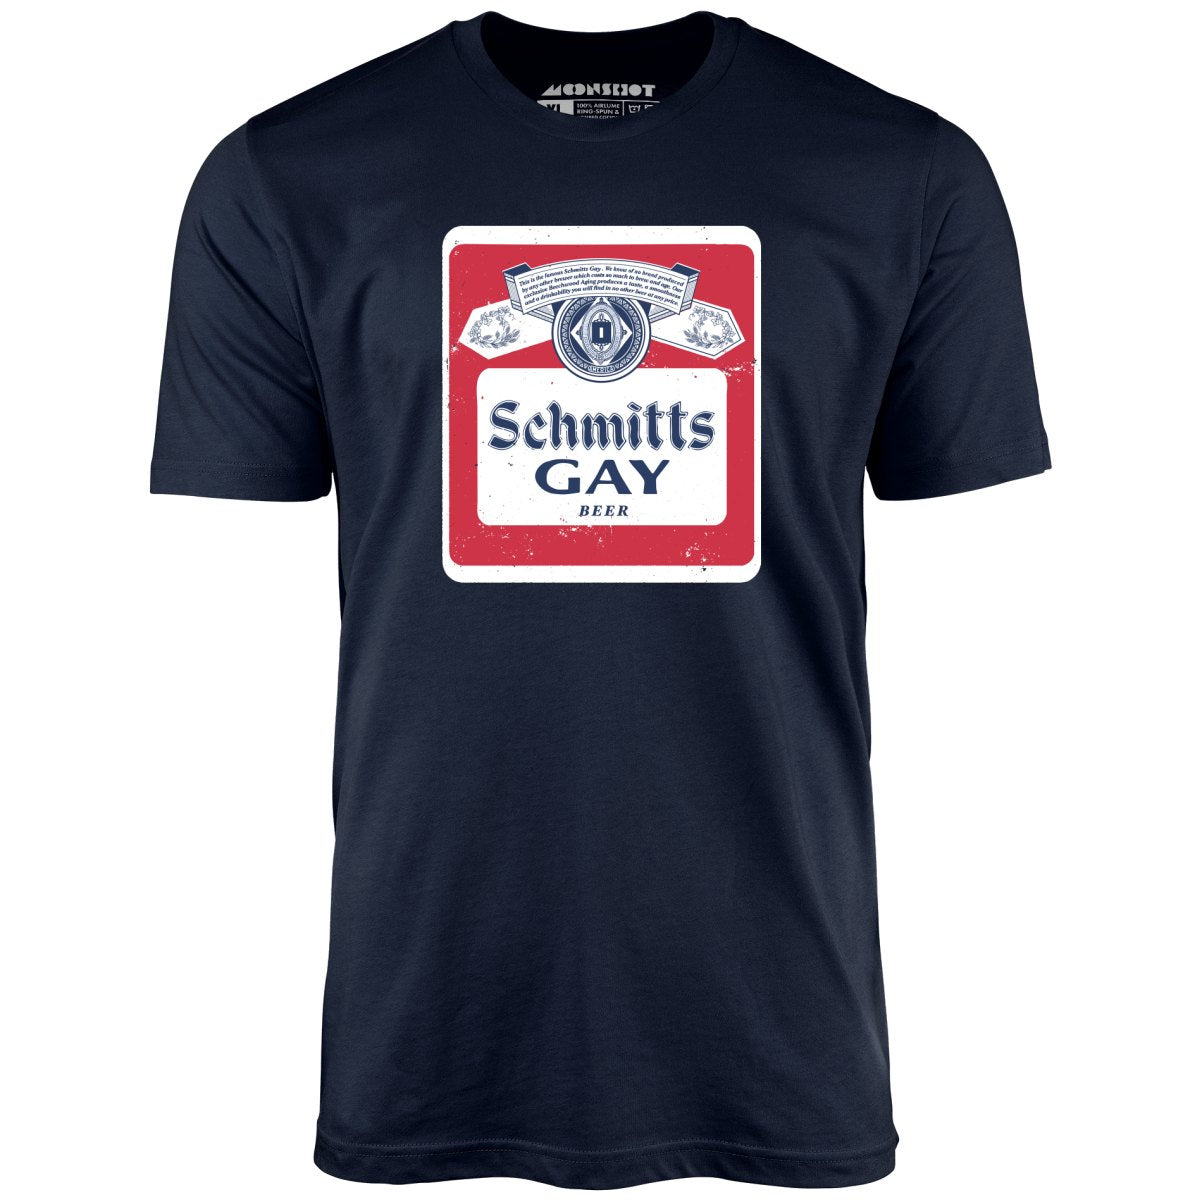 Schmitts Gay Beer - Unisex T-Shirt